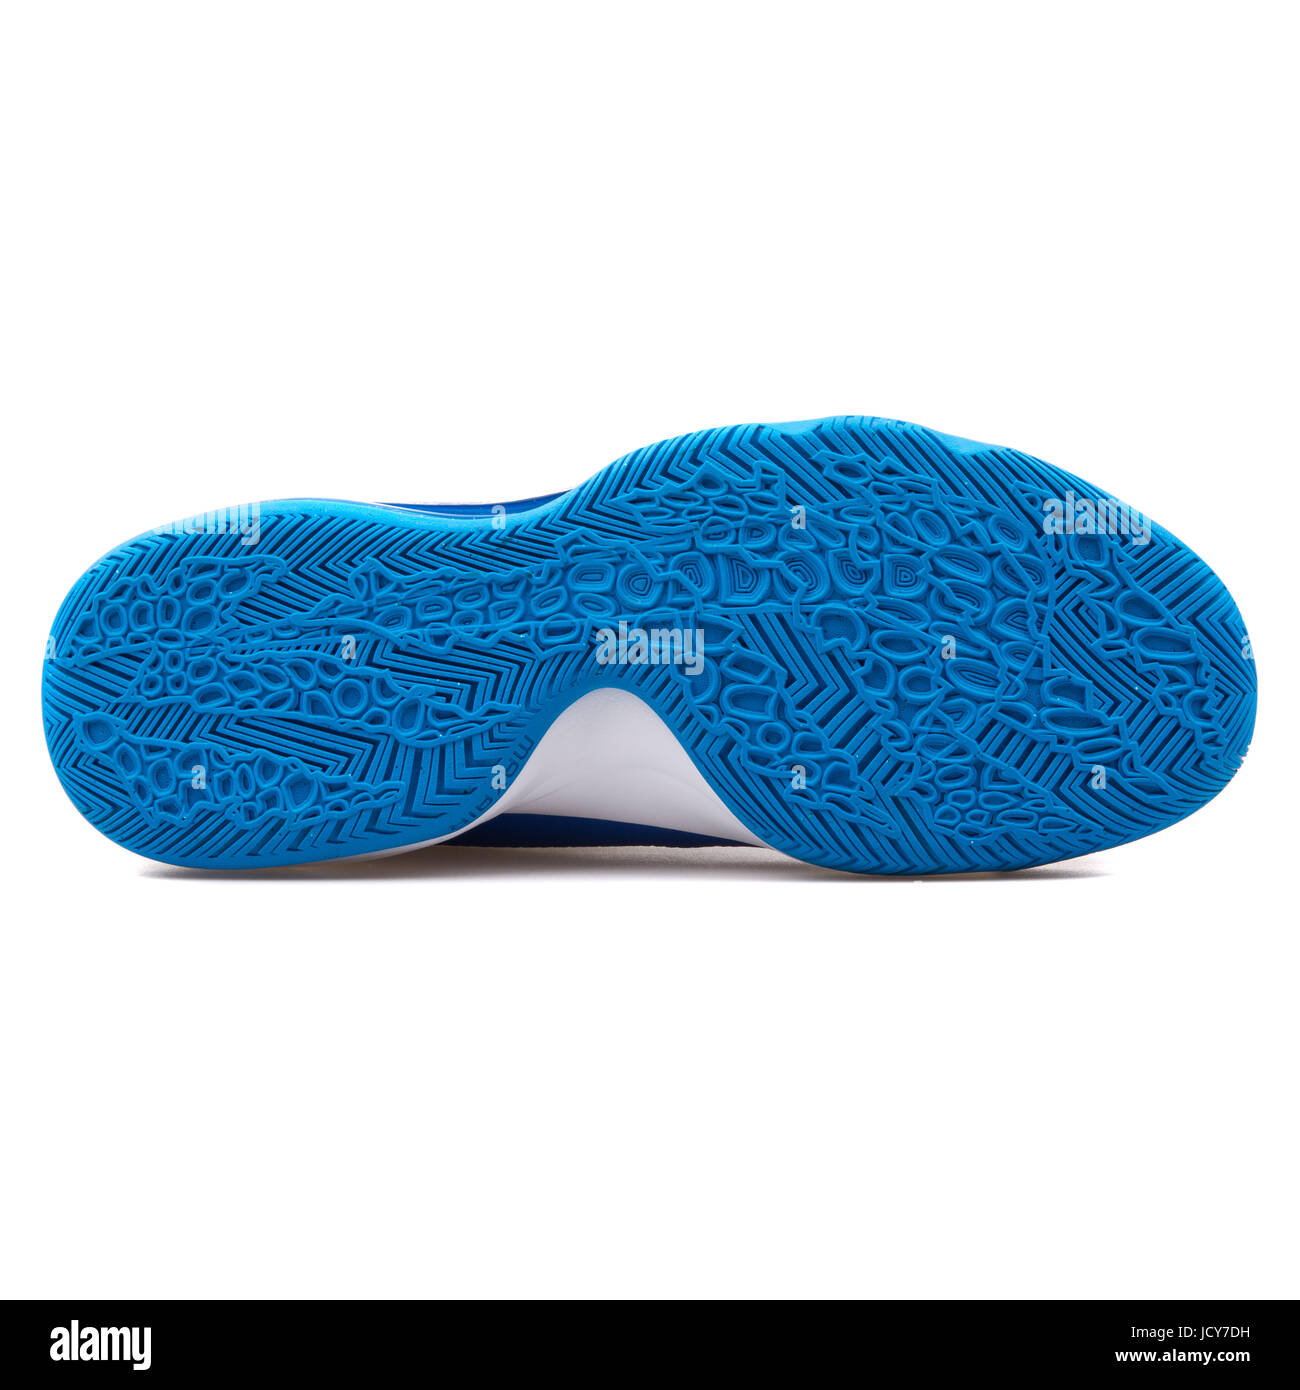 educación Actualizar Extracción Nike Air Max Audacity TB Unisex azul y blanco zapatillas de baloncesto -  749166-403 Fotografía de stock - Alamy